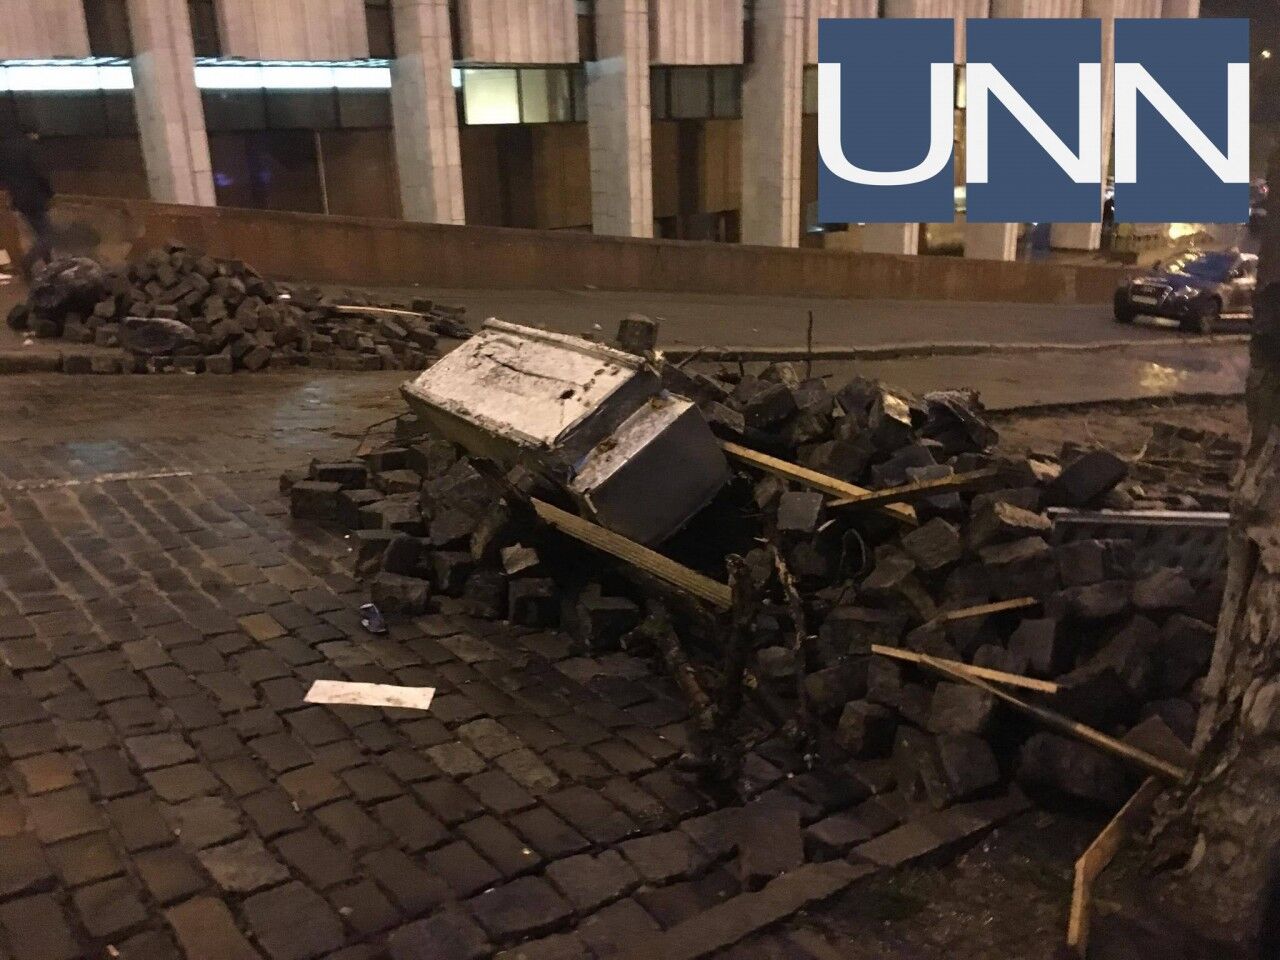 Бруківка, сміття і барикади: мережу обурили наслідки "звільнення" Саакашвілі